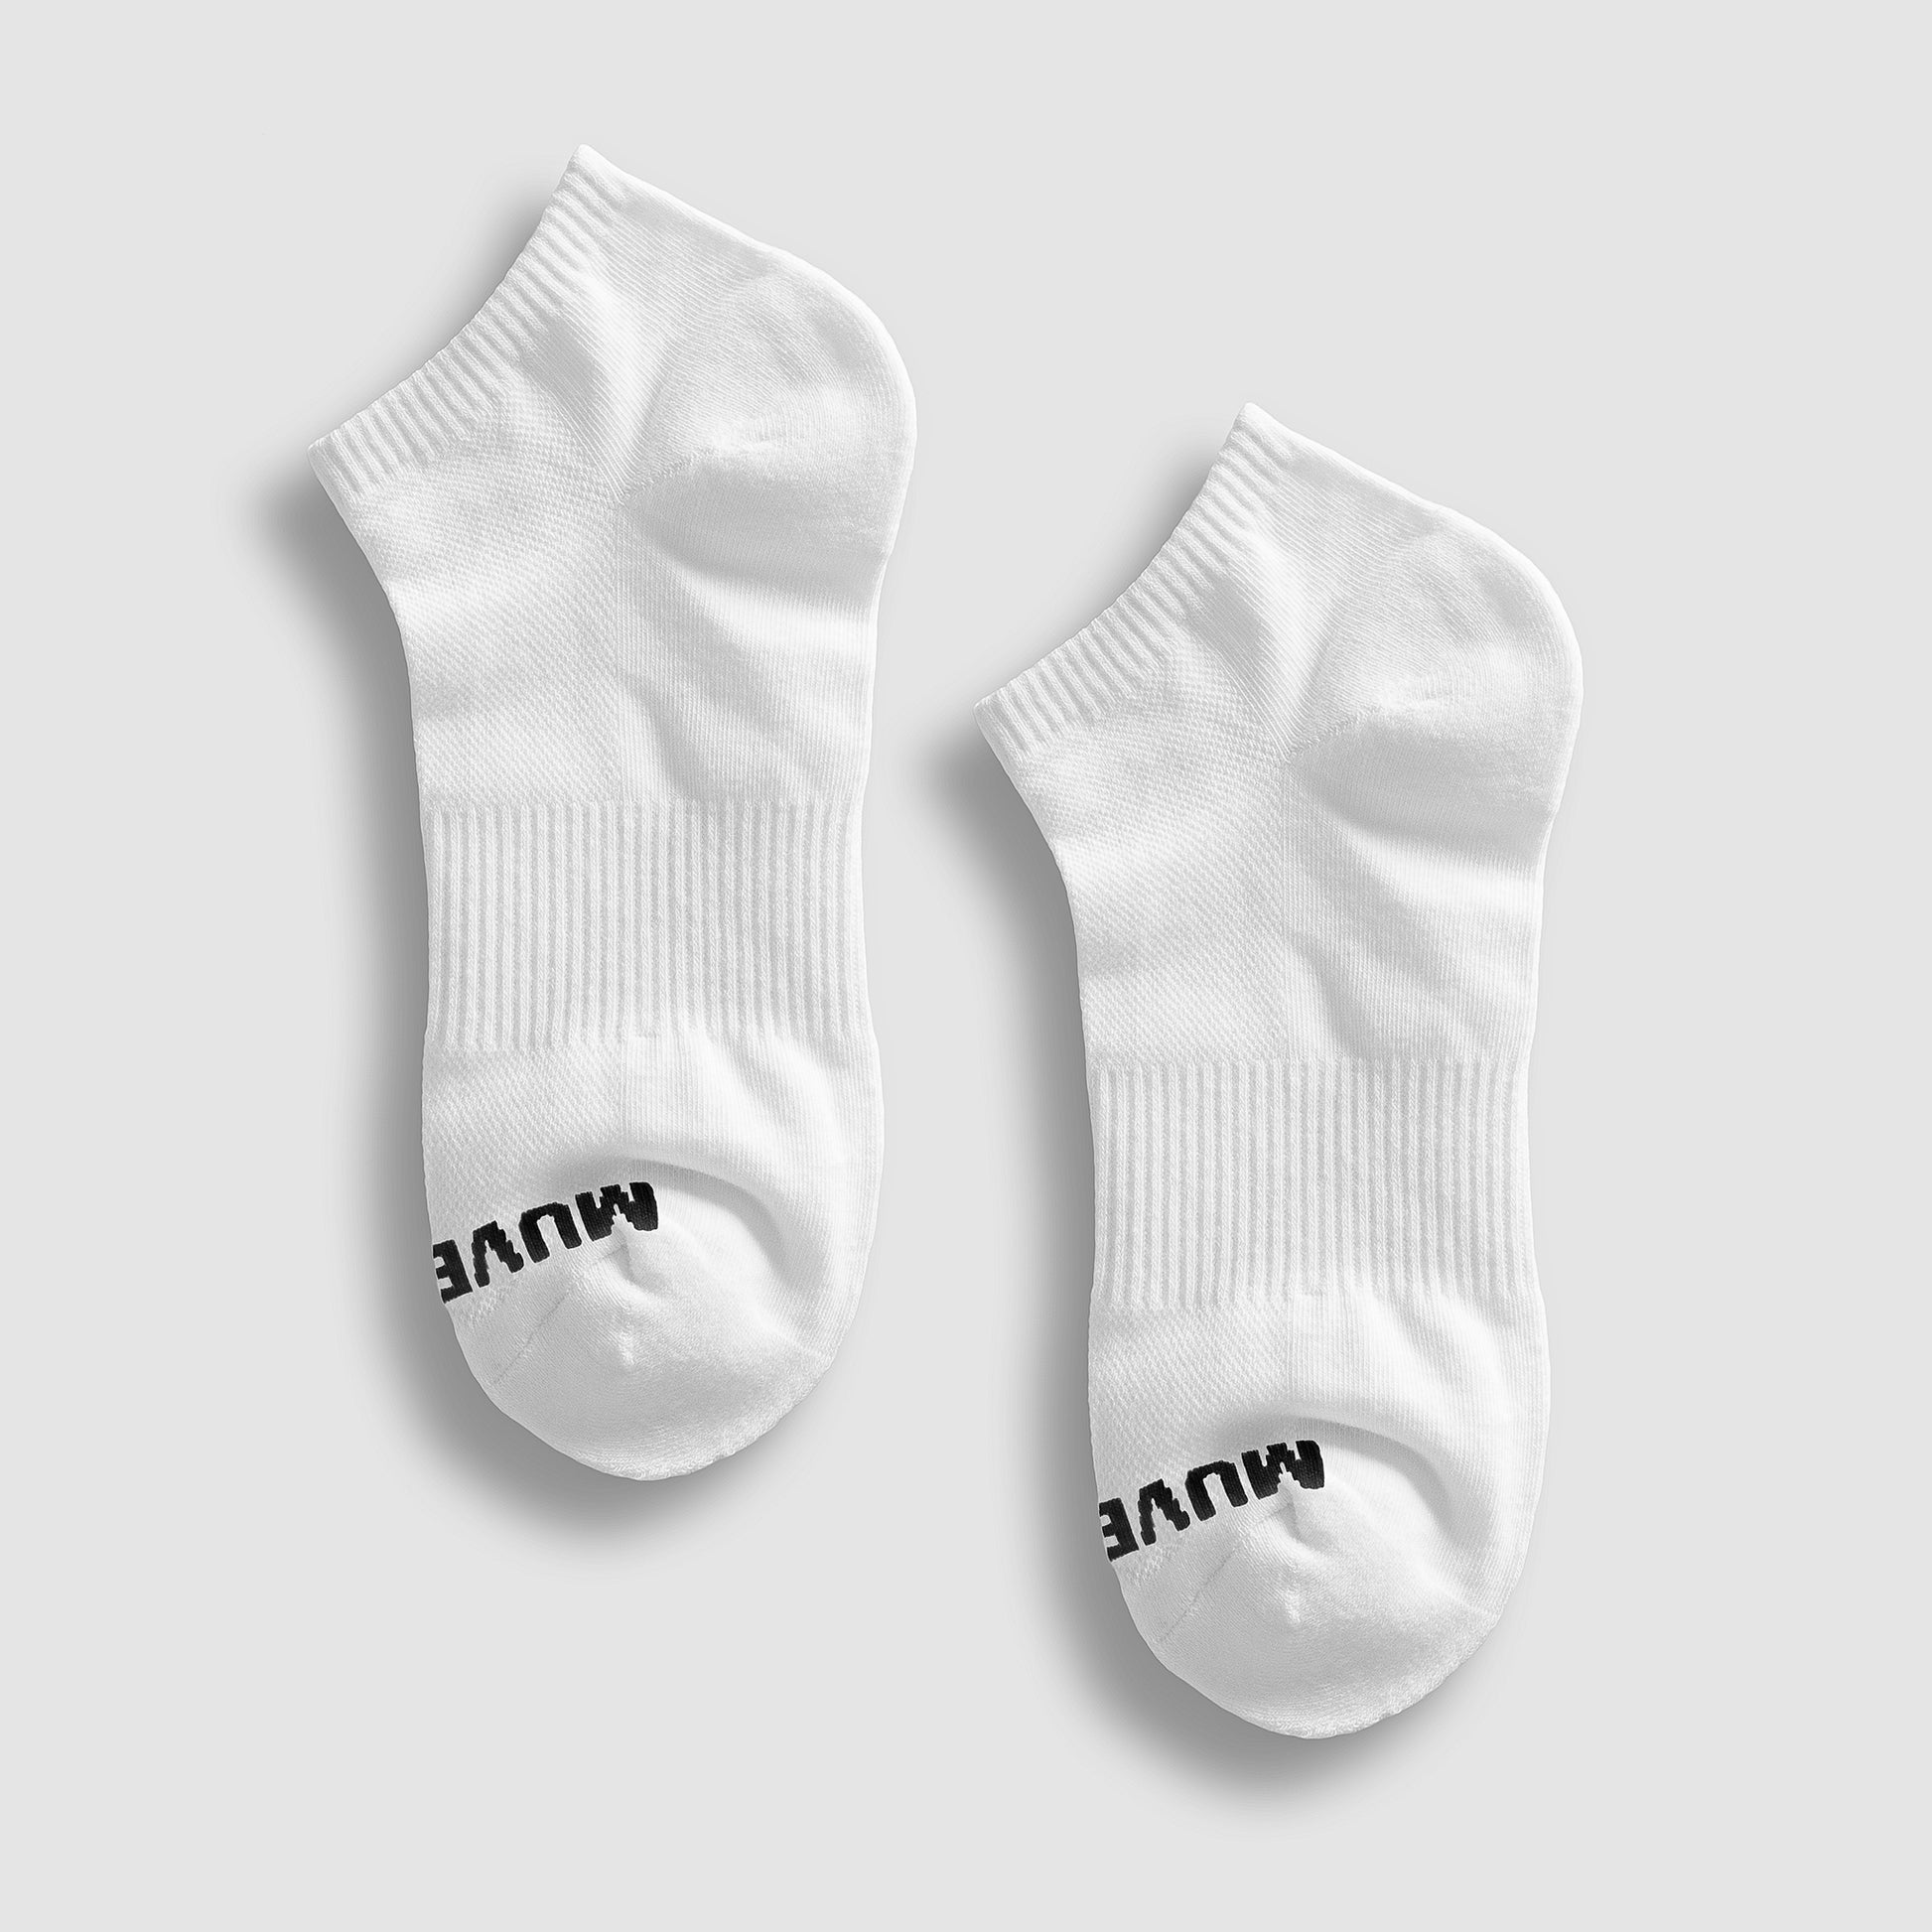 White Ankle Sock